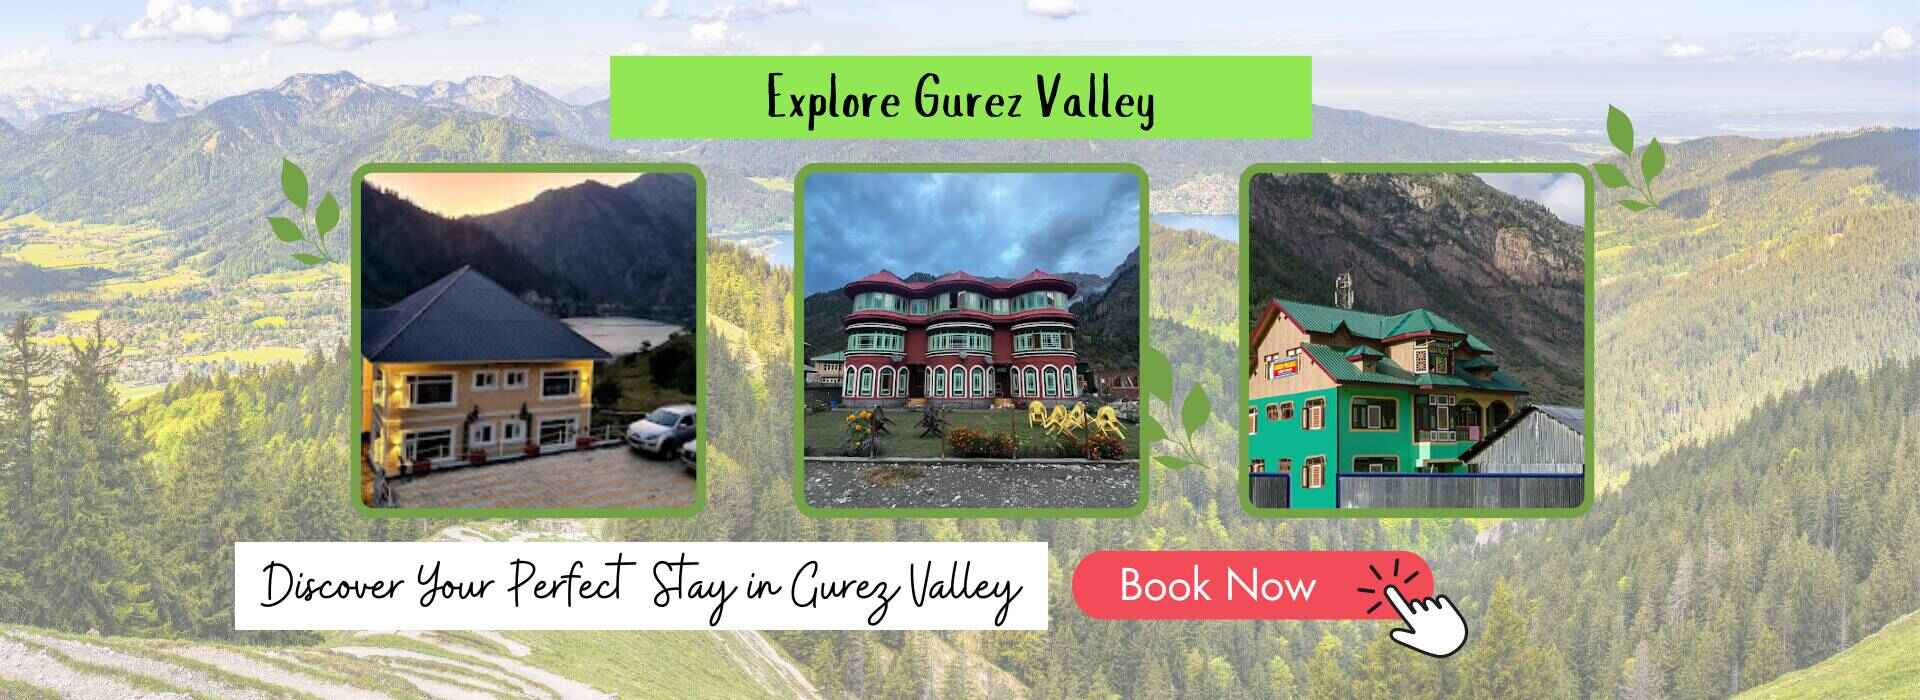 Explore in Gurez Valley kashmirhills.com